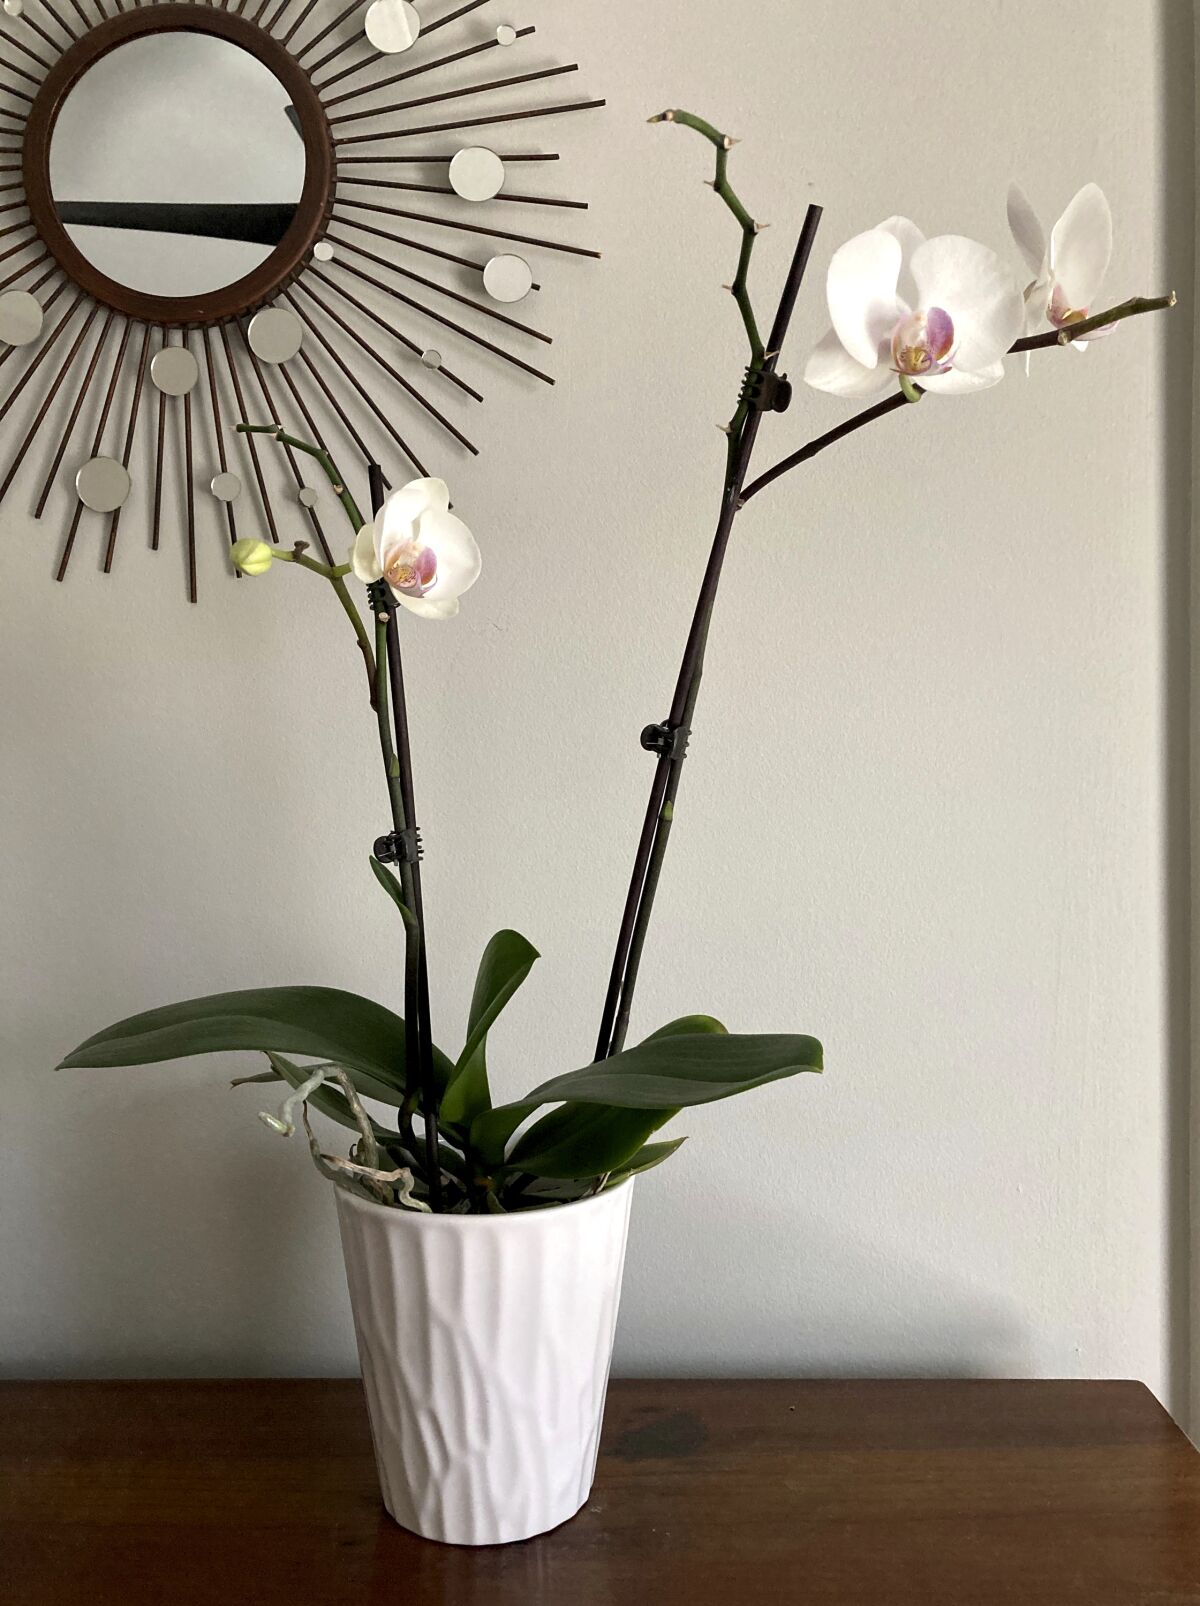 La orquídea, otrora inaccesible, hoy al alcance de todos - San Diego  Union-Tribune en Español